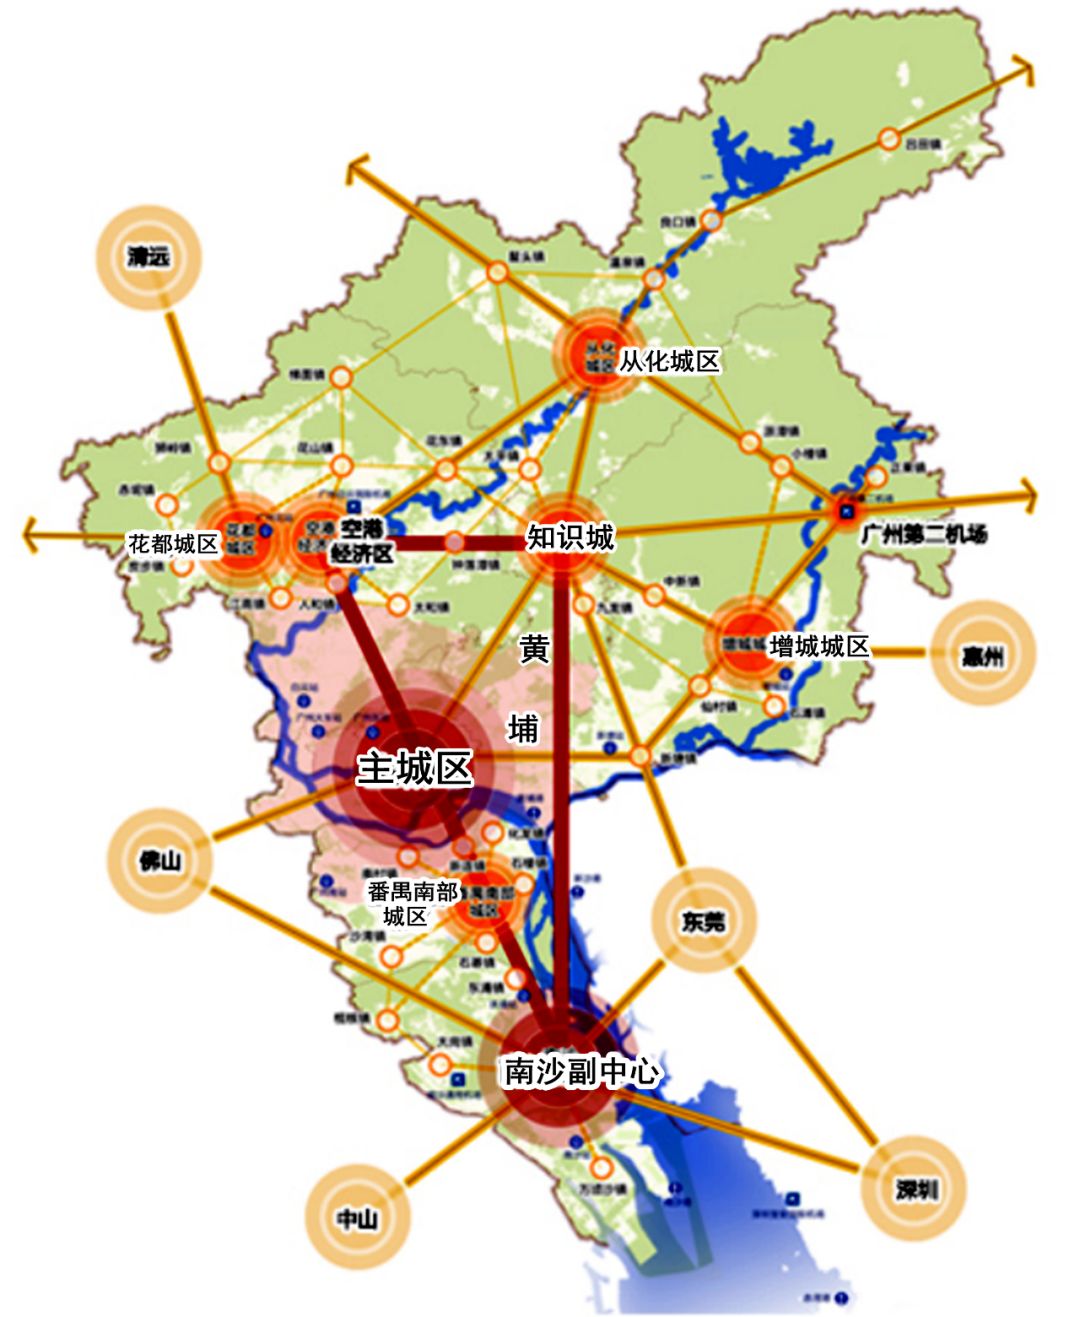 最近公布的《广州城市总体规划(2017-2035年)》草案,正是这样一份